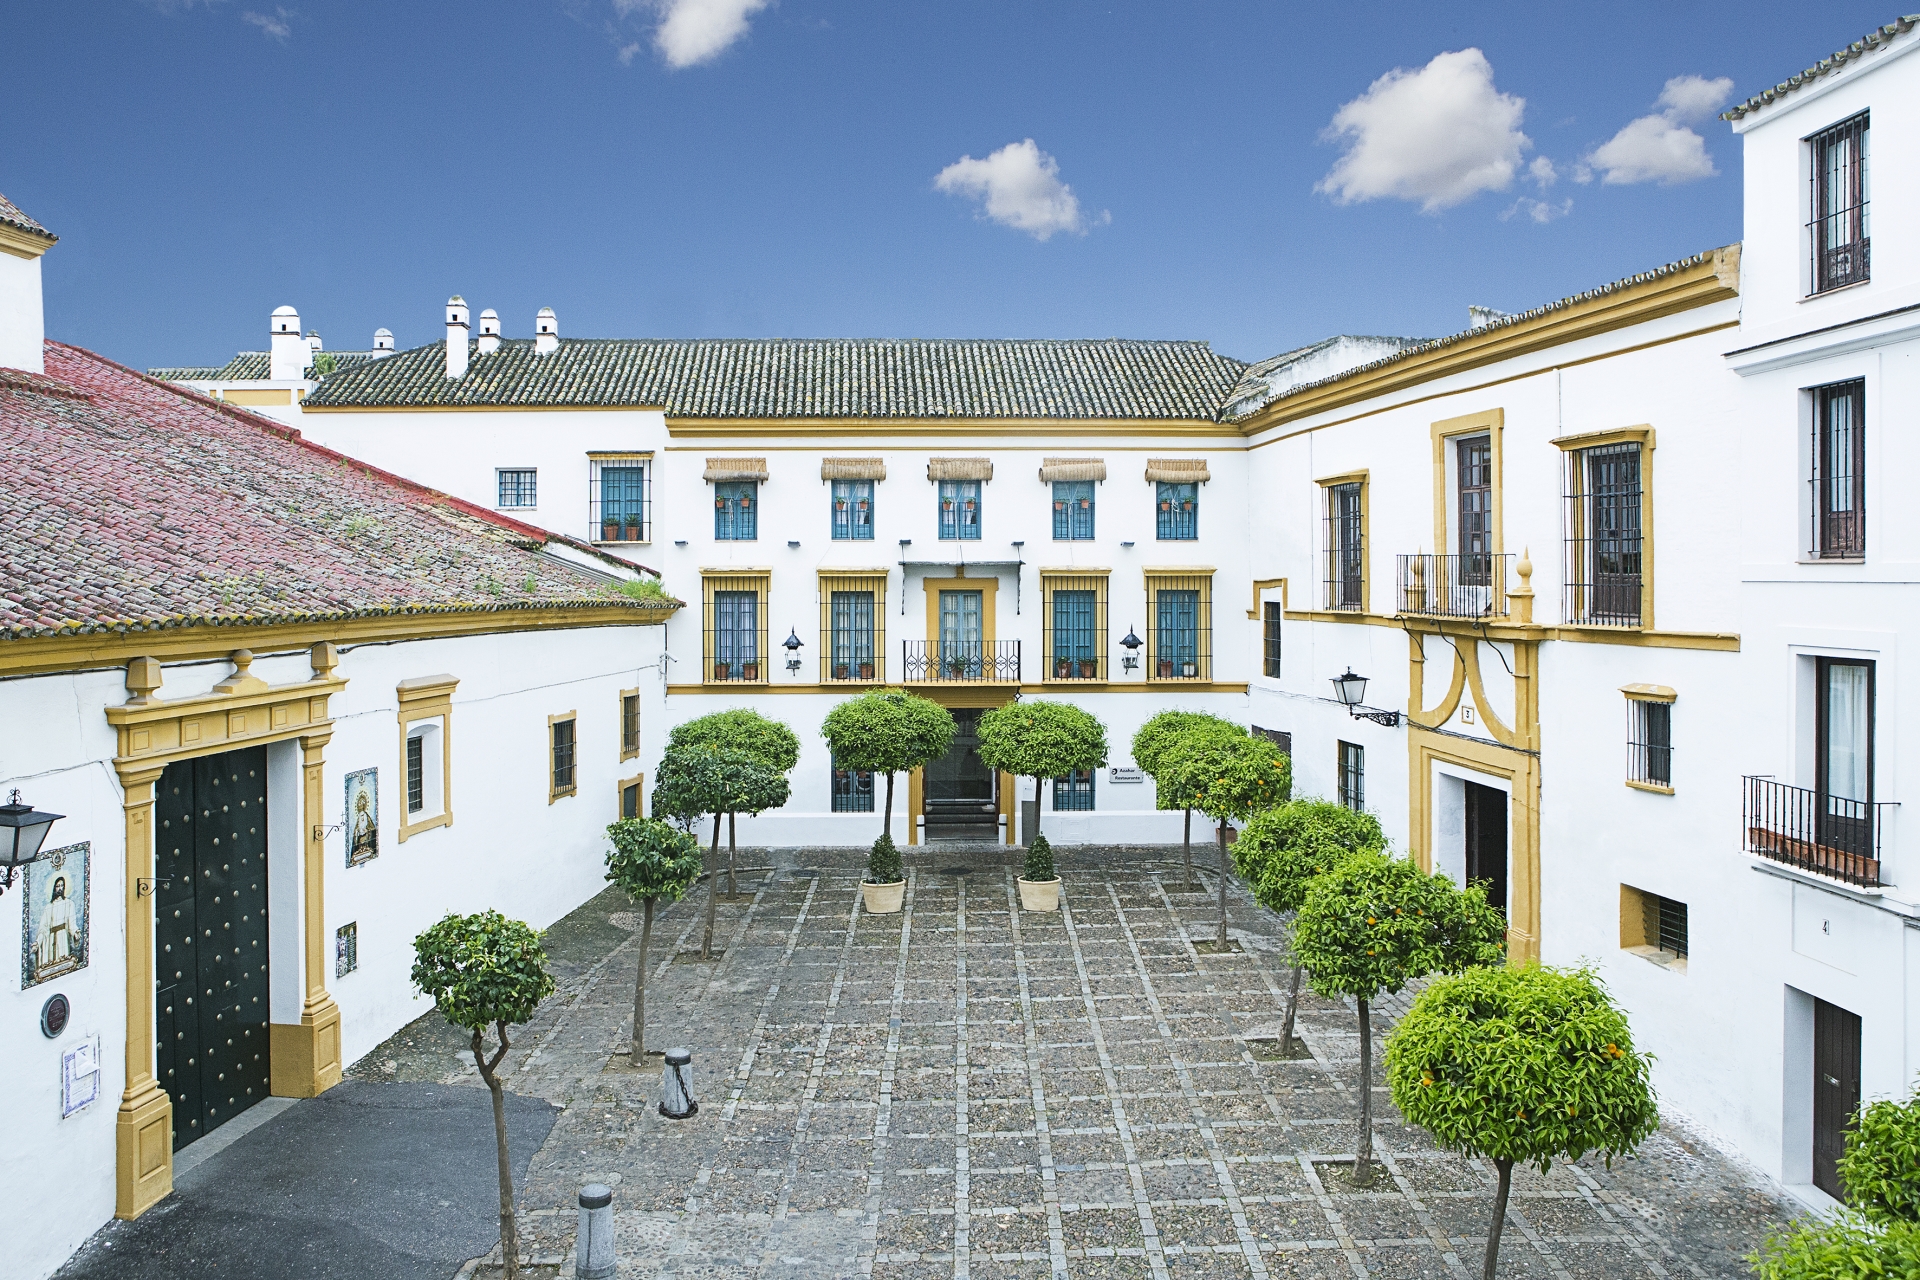 Courtyard - Hospes Las Casas del Rey de Baeza